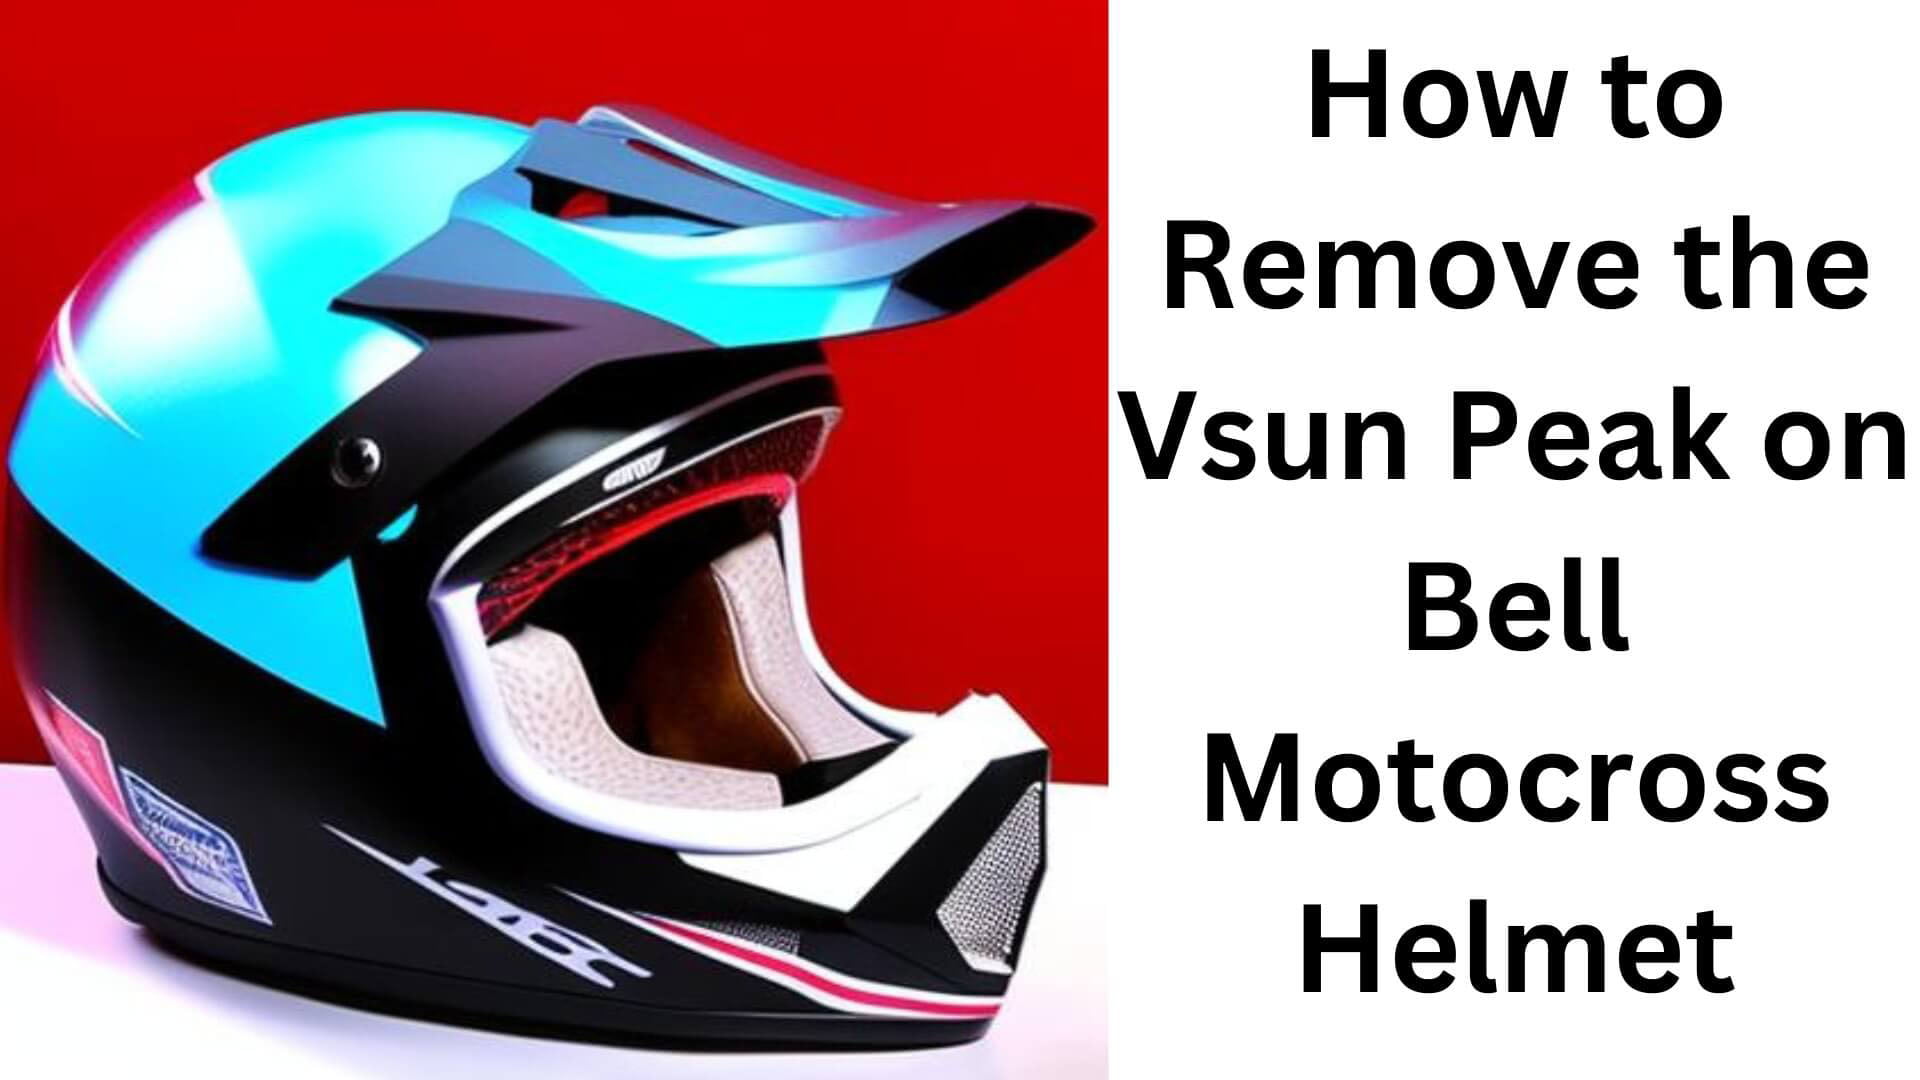 How to Remove The Vsun Peak on Bell Motocross Helmet?